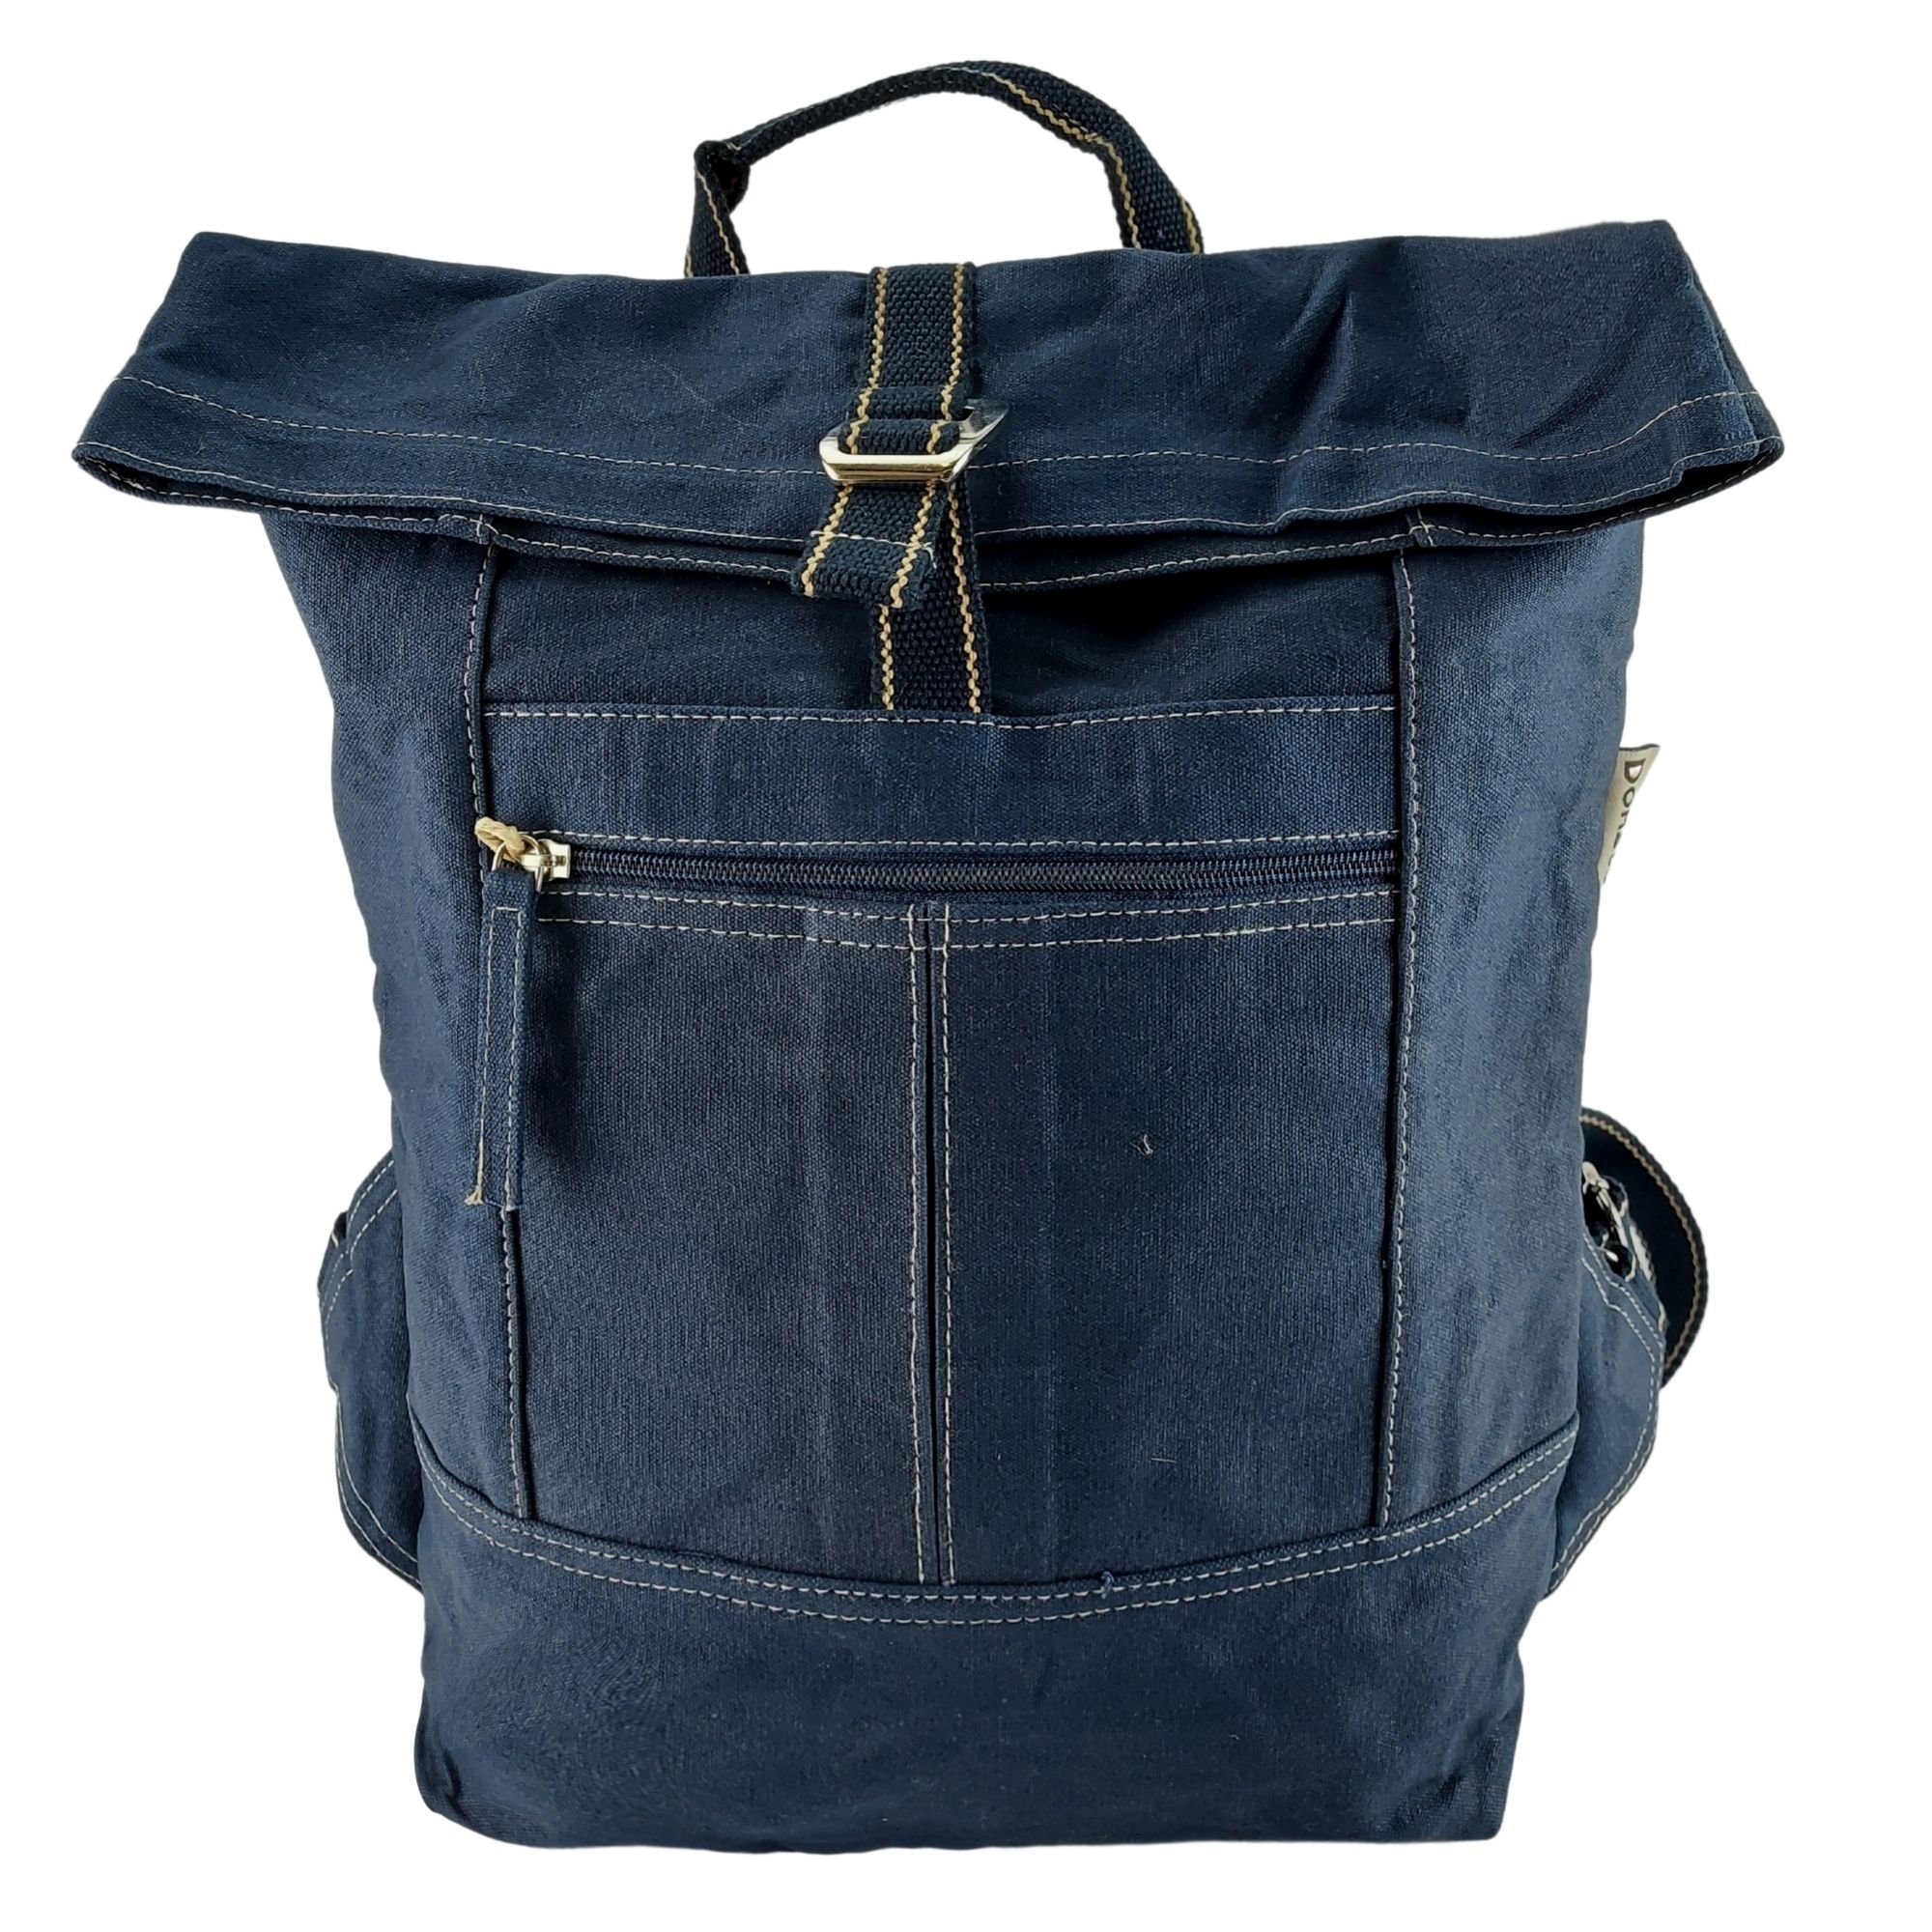 Domelo Rucksack 52639 gewachste Backpack vegan wasserabweisend, schlichte Optik, vegan, Upcycling Tasche aus gewachstem Canvas, wasserabweisend, DIN A4 geeignet dunkelblau